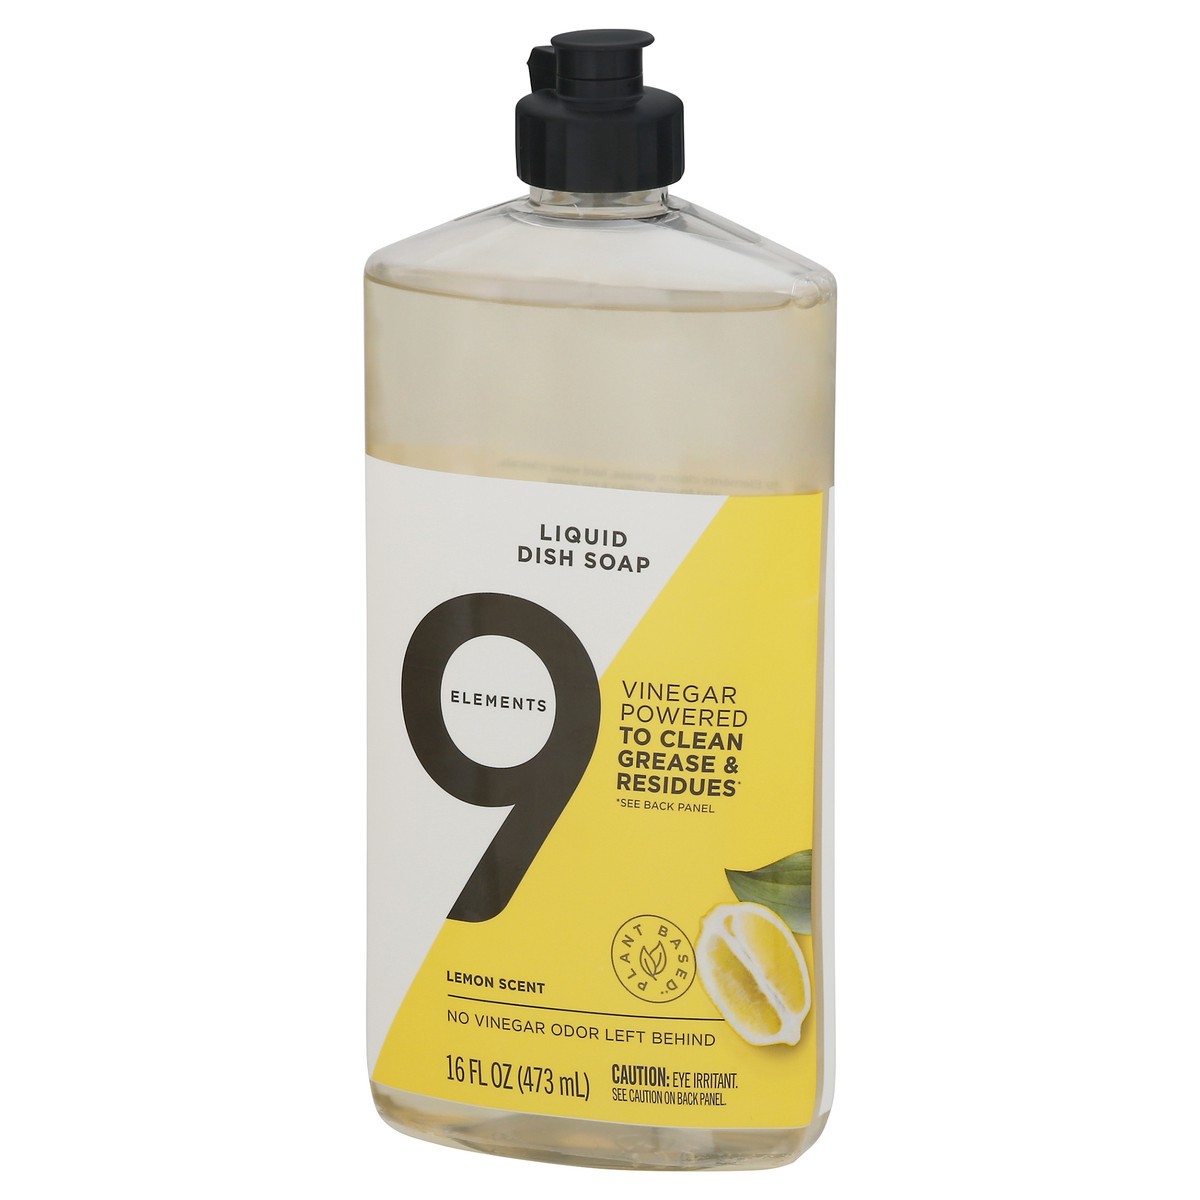 slide 3 of 9, 9 Elements Dishwashing Liquid Dish Soap, Lemon Scent Cleaner, 16 oz Bottle, 16 fl oz